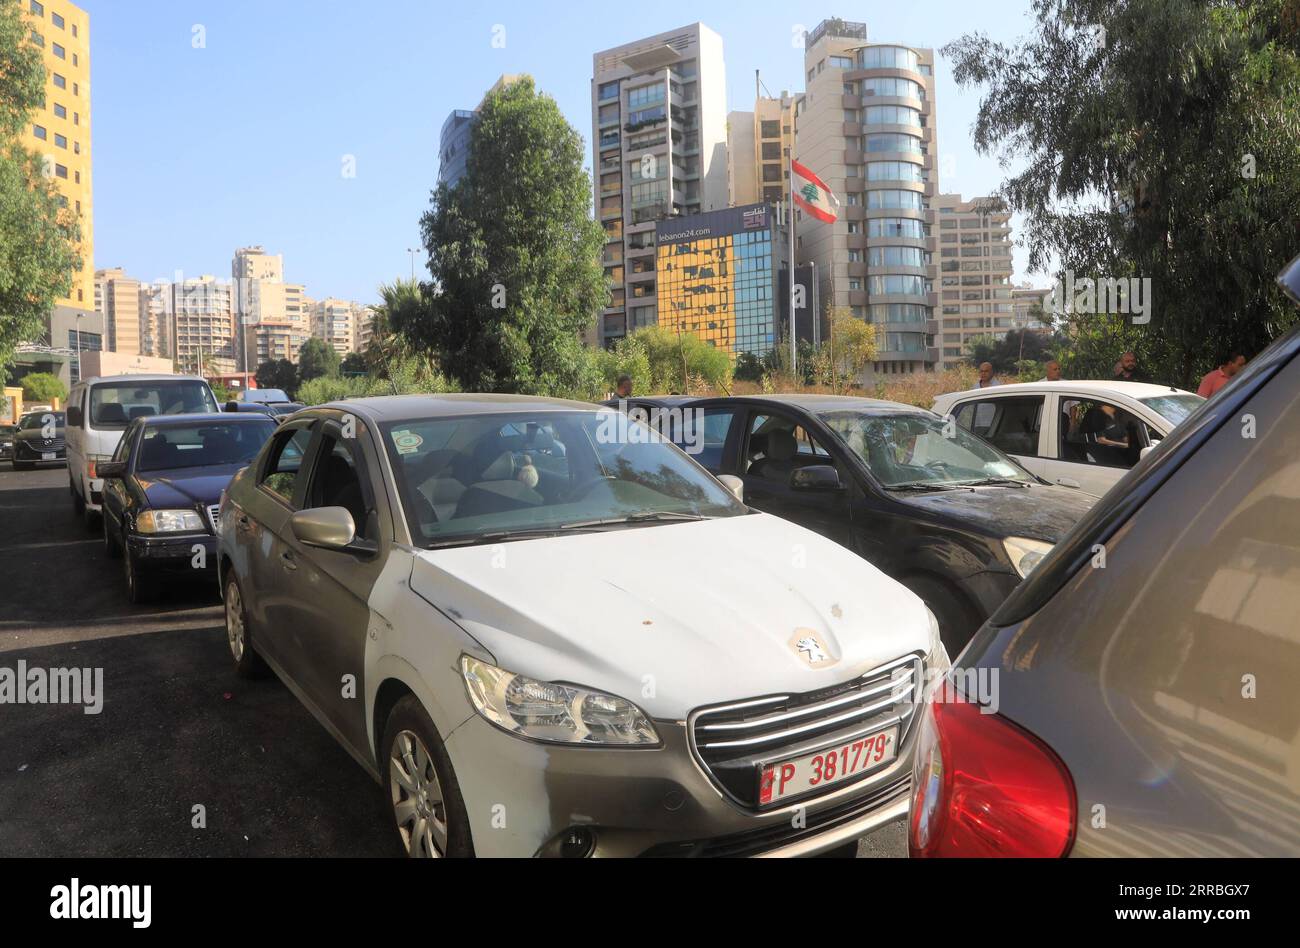 210922 -- BEIRUT, 22 settembre 2021 -- Una lunga fila di auto aspetta il carburante su una strada principale vicino a un distributore di benzina a Beirut, Libano, il 21 settembre 2021. Il Ministero dell'energia libanese ha aumentato i prezzi della benzina per la seconda volta in meno di una settimana, ponendo fine alle sovvenzioni per il carburante. LIBANO-BEIRUT-ENERGIA-CARBURANTE AUMENTI DEI PREZZI LIUXZONGYA PUBLICATIONXNOTXINXCHN Foto Stock